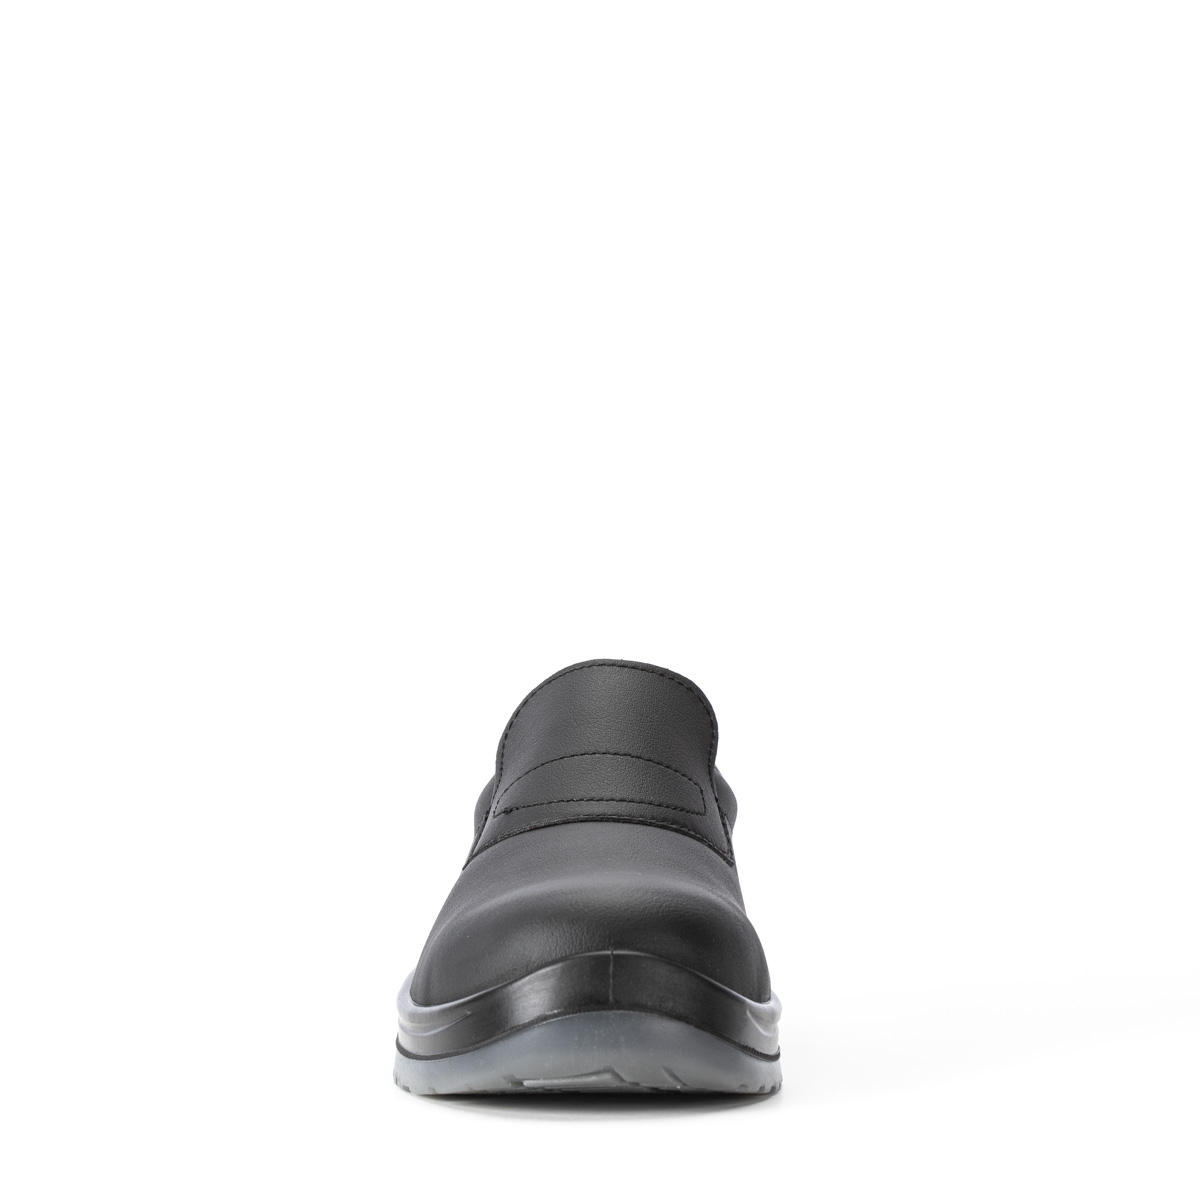 Crystal - protezione Chaussure - con Peak SRC VENEZIA di Sixton 86203-01 modello Safety S2 Codice classe Shoes